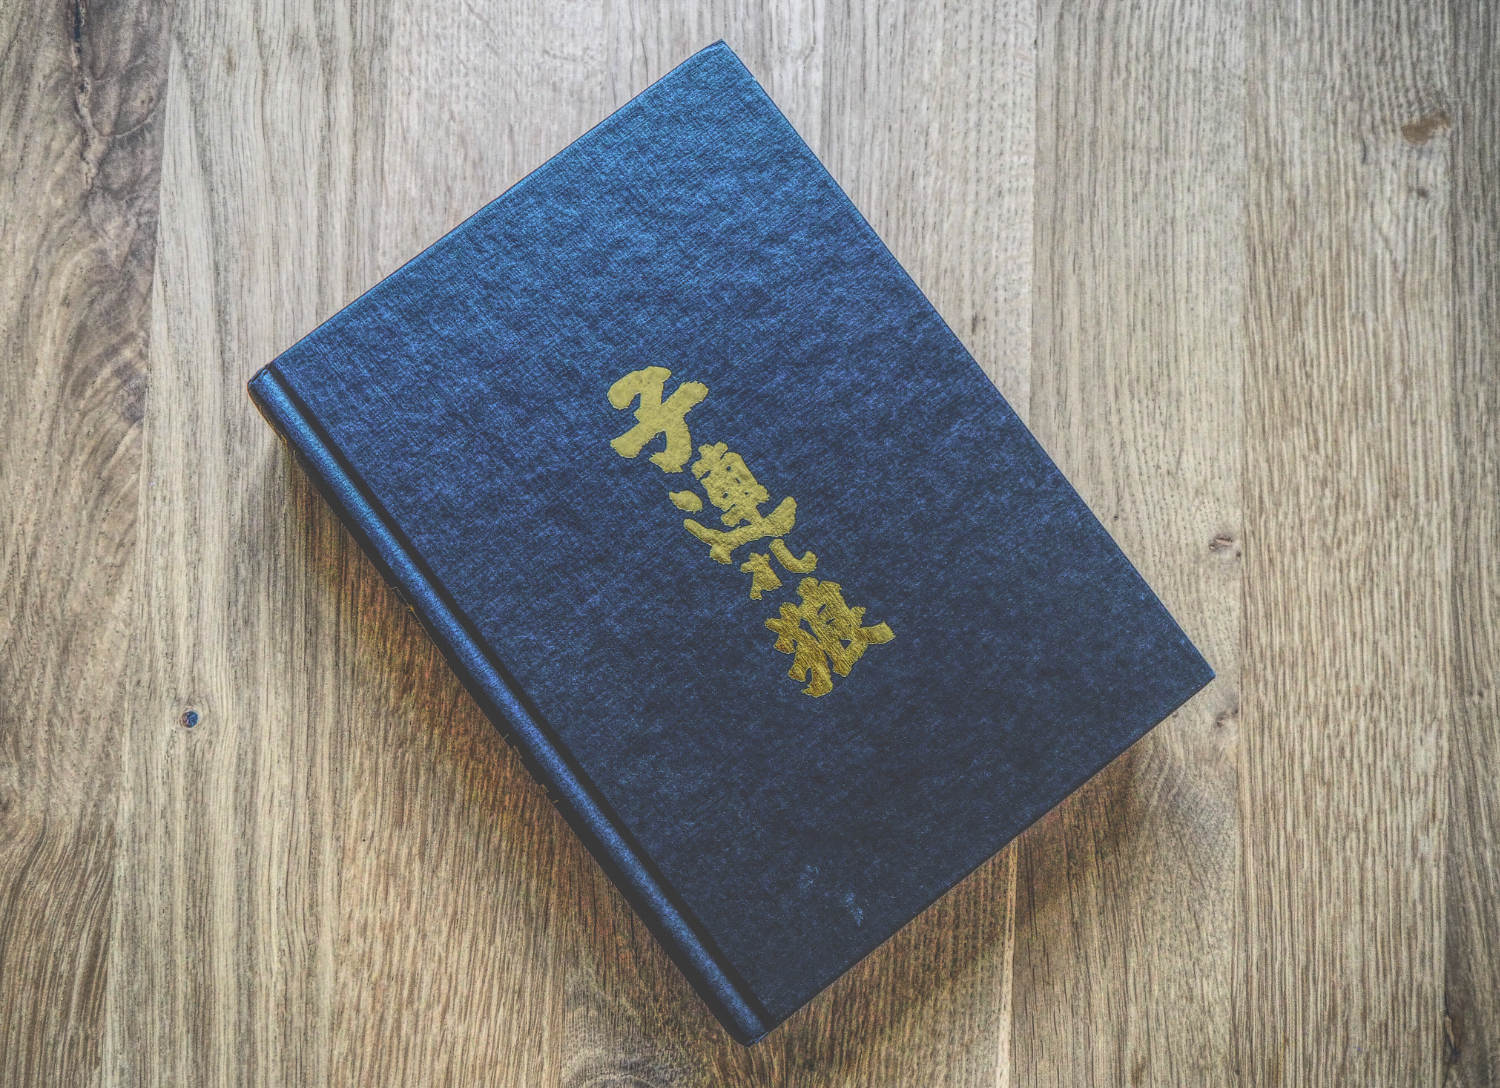 Ein blaues Buch mit chinesischer Schrift darauf.